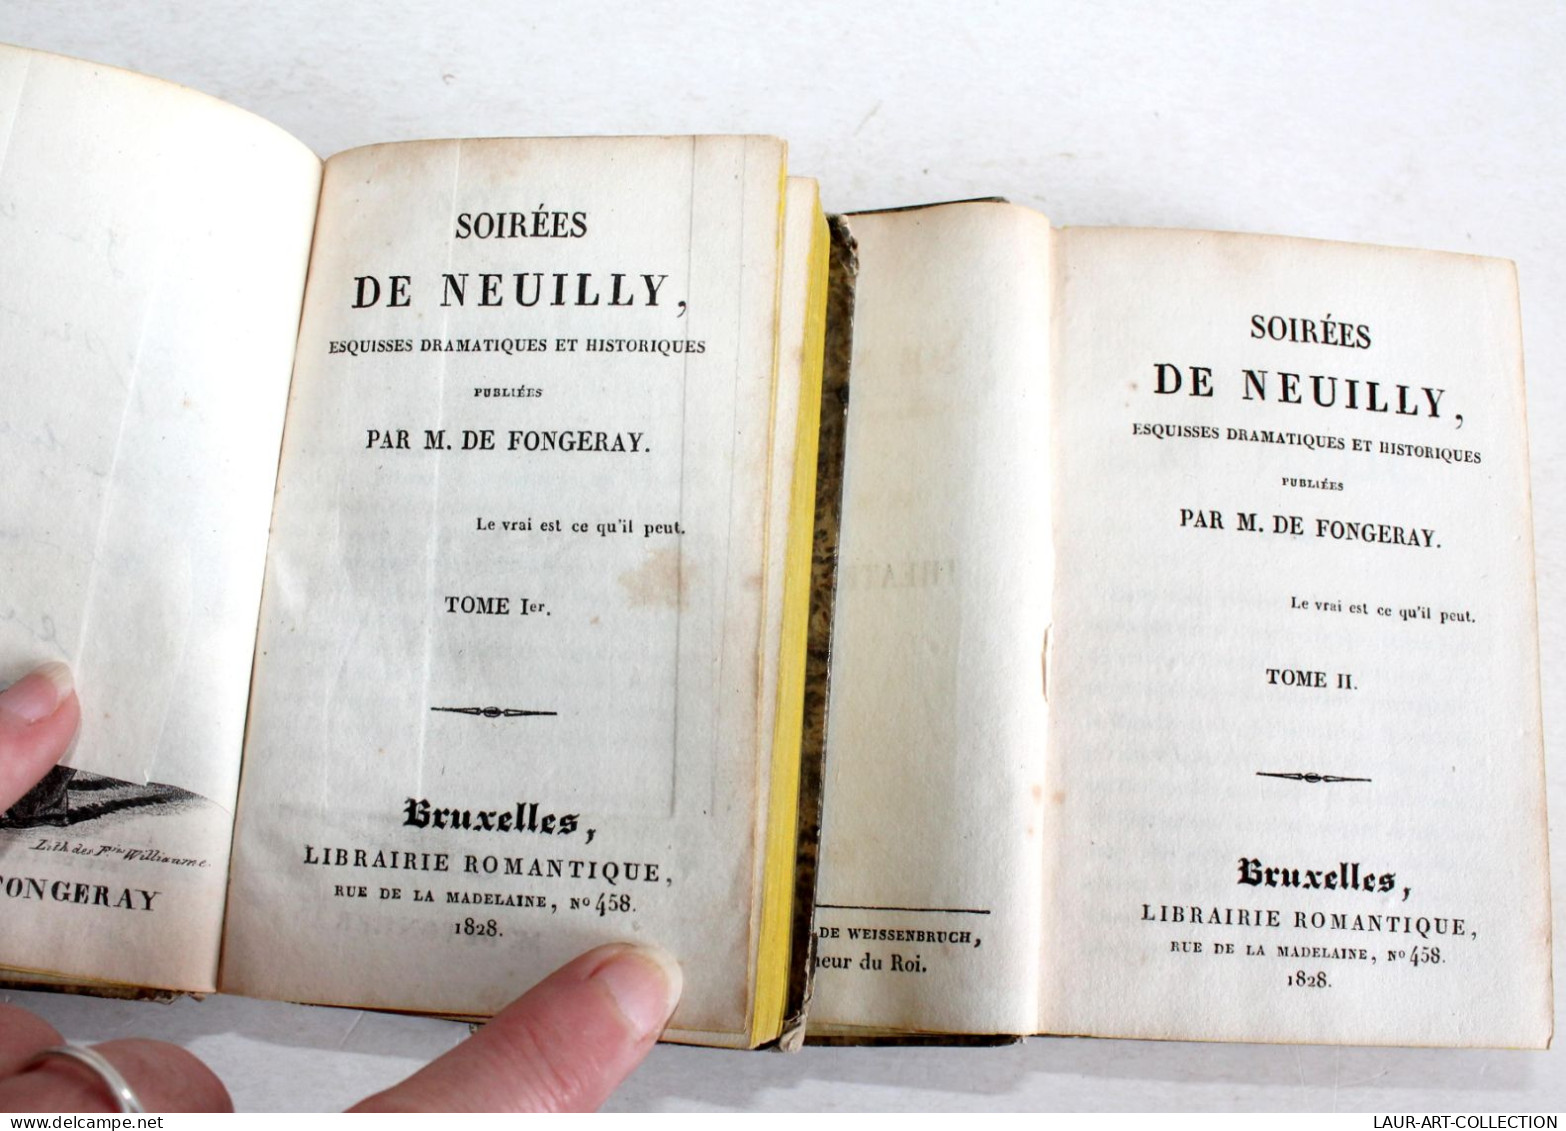 RARE EO + ENVOI D'AUTEUR SOIREES DE NEUILLY ESQUISSE DRAMATIQUE DE FONGERAY 1828 / ANCIEN LIVRE XIXe SIECLE (1803.259 - Livres Dédicacés